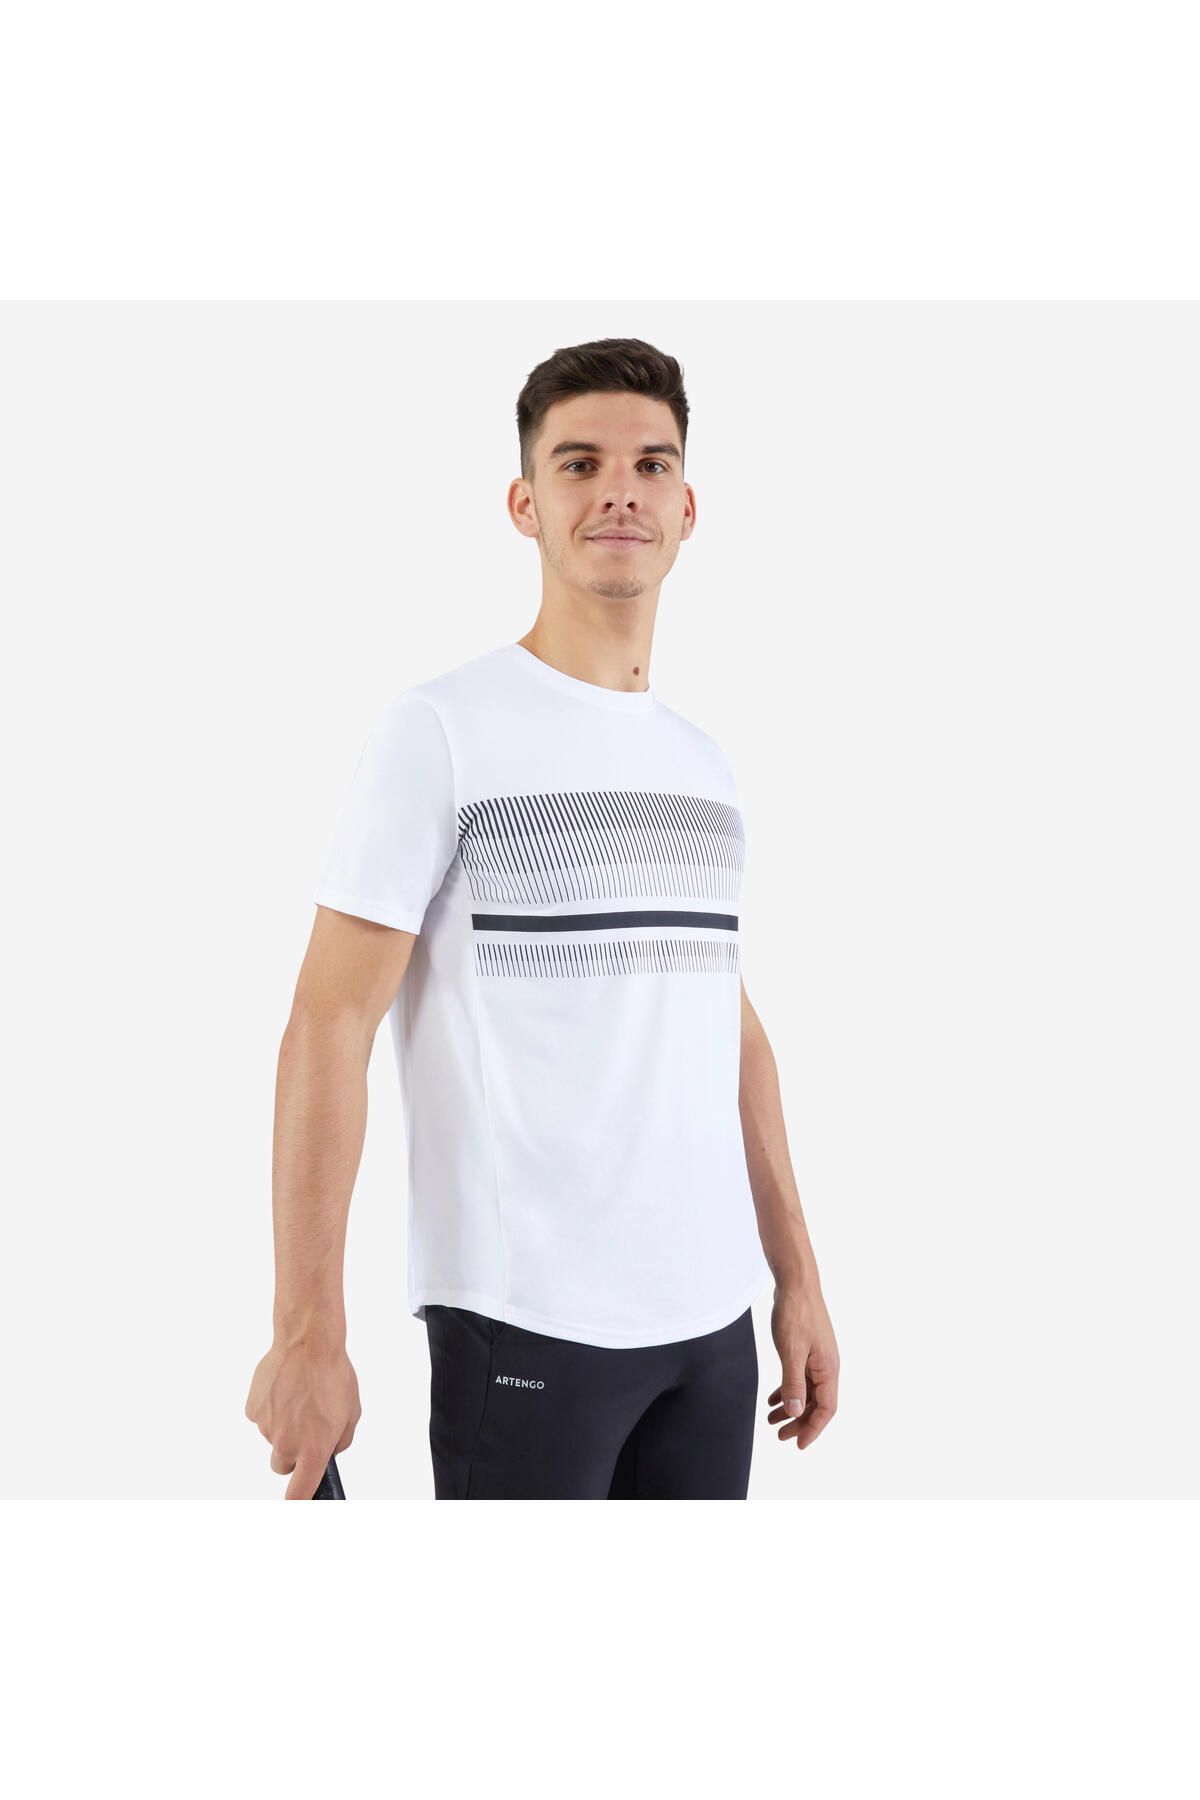 Decathlon Erkek Kısa Kollu Tenis Tişörtü - Beyaz - Essential